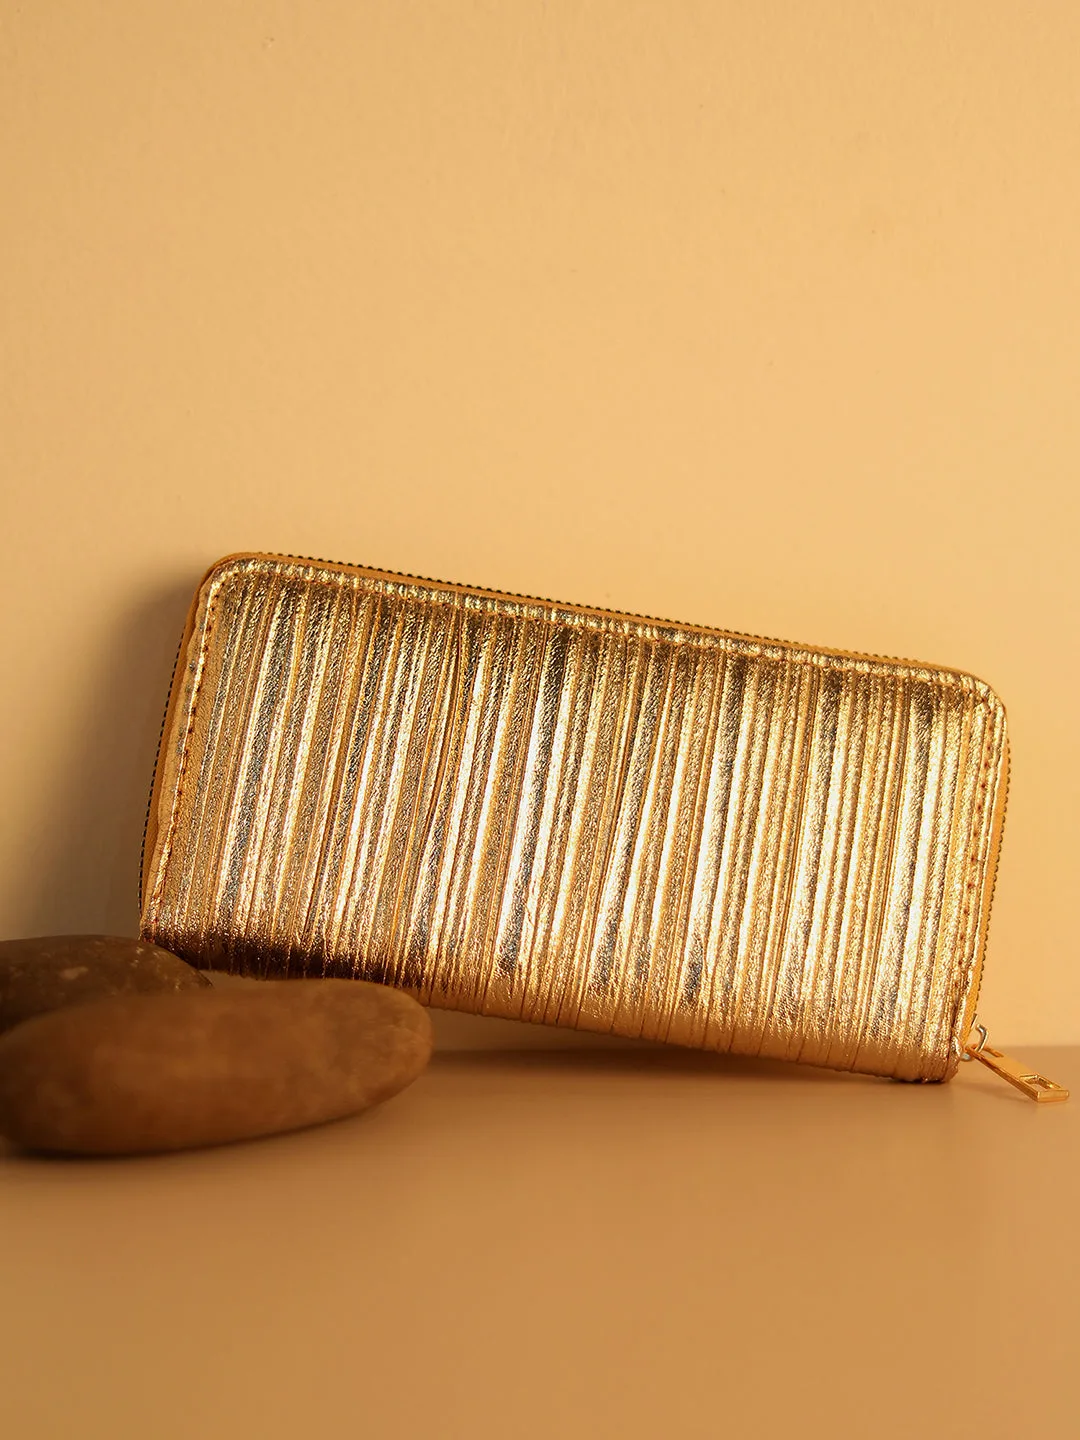 Textured Casual Regular Wallet with Zip Lock For Women